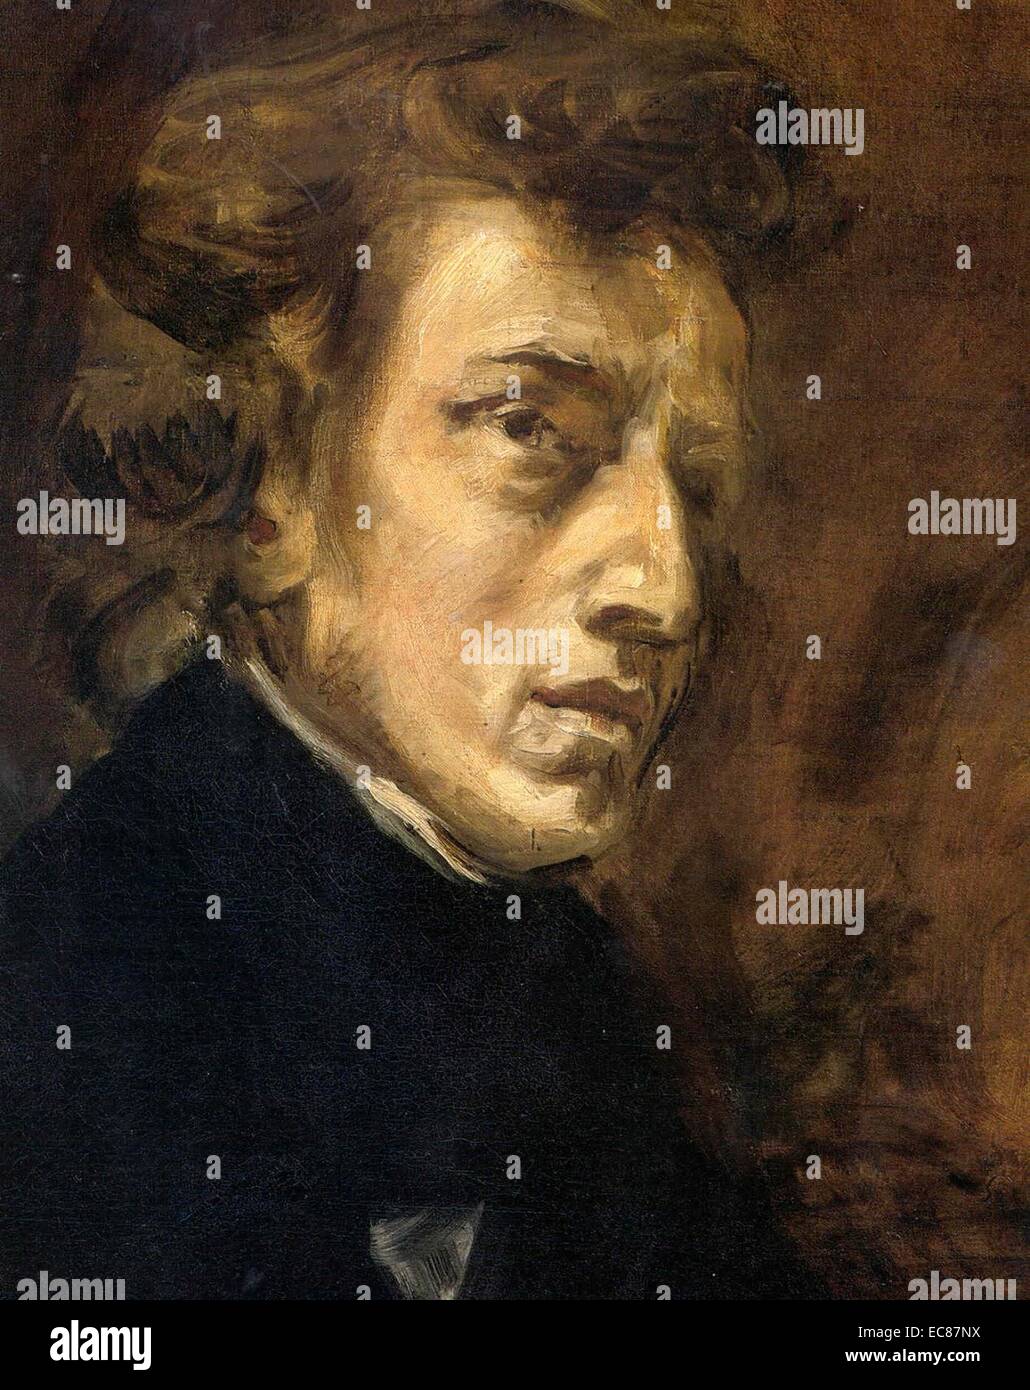 Portrait von Frédéric François Chopin (1810 - 1849) der polnische Komponist und virtuoser Pianist der romantischen Epoche, die in erster Linie für die solo piano schrieb. Von Eugene Delacroix gemalt. Vom 1838 Stockfoto